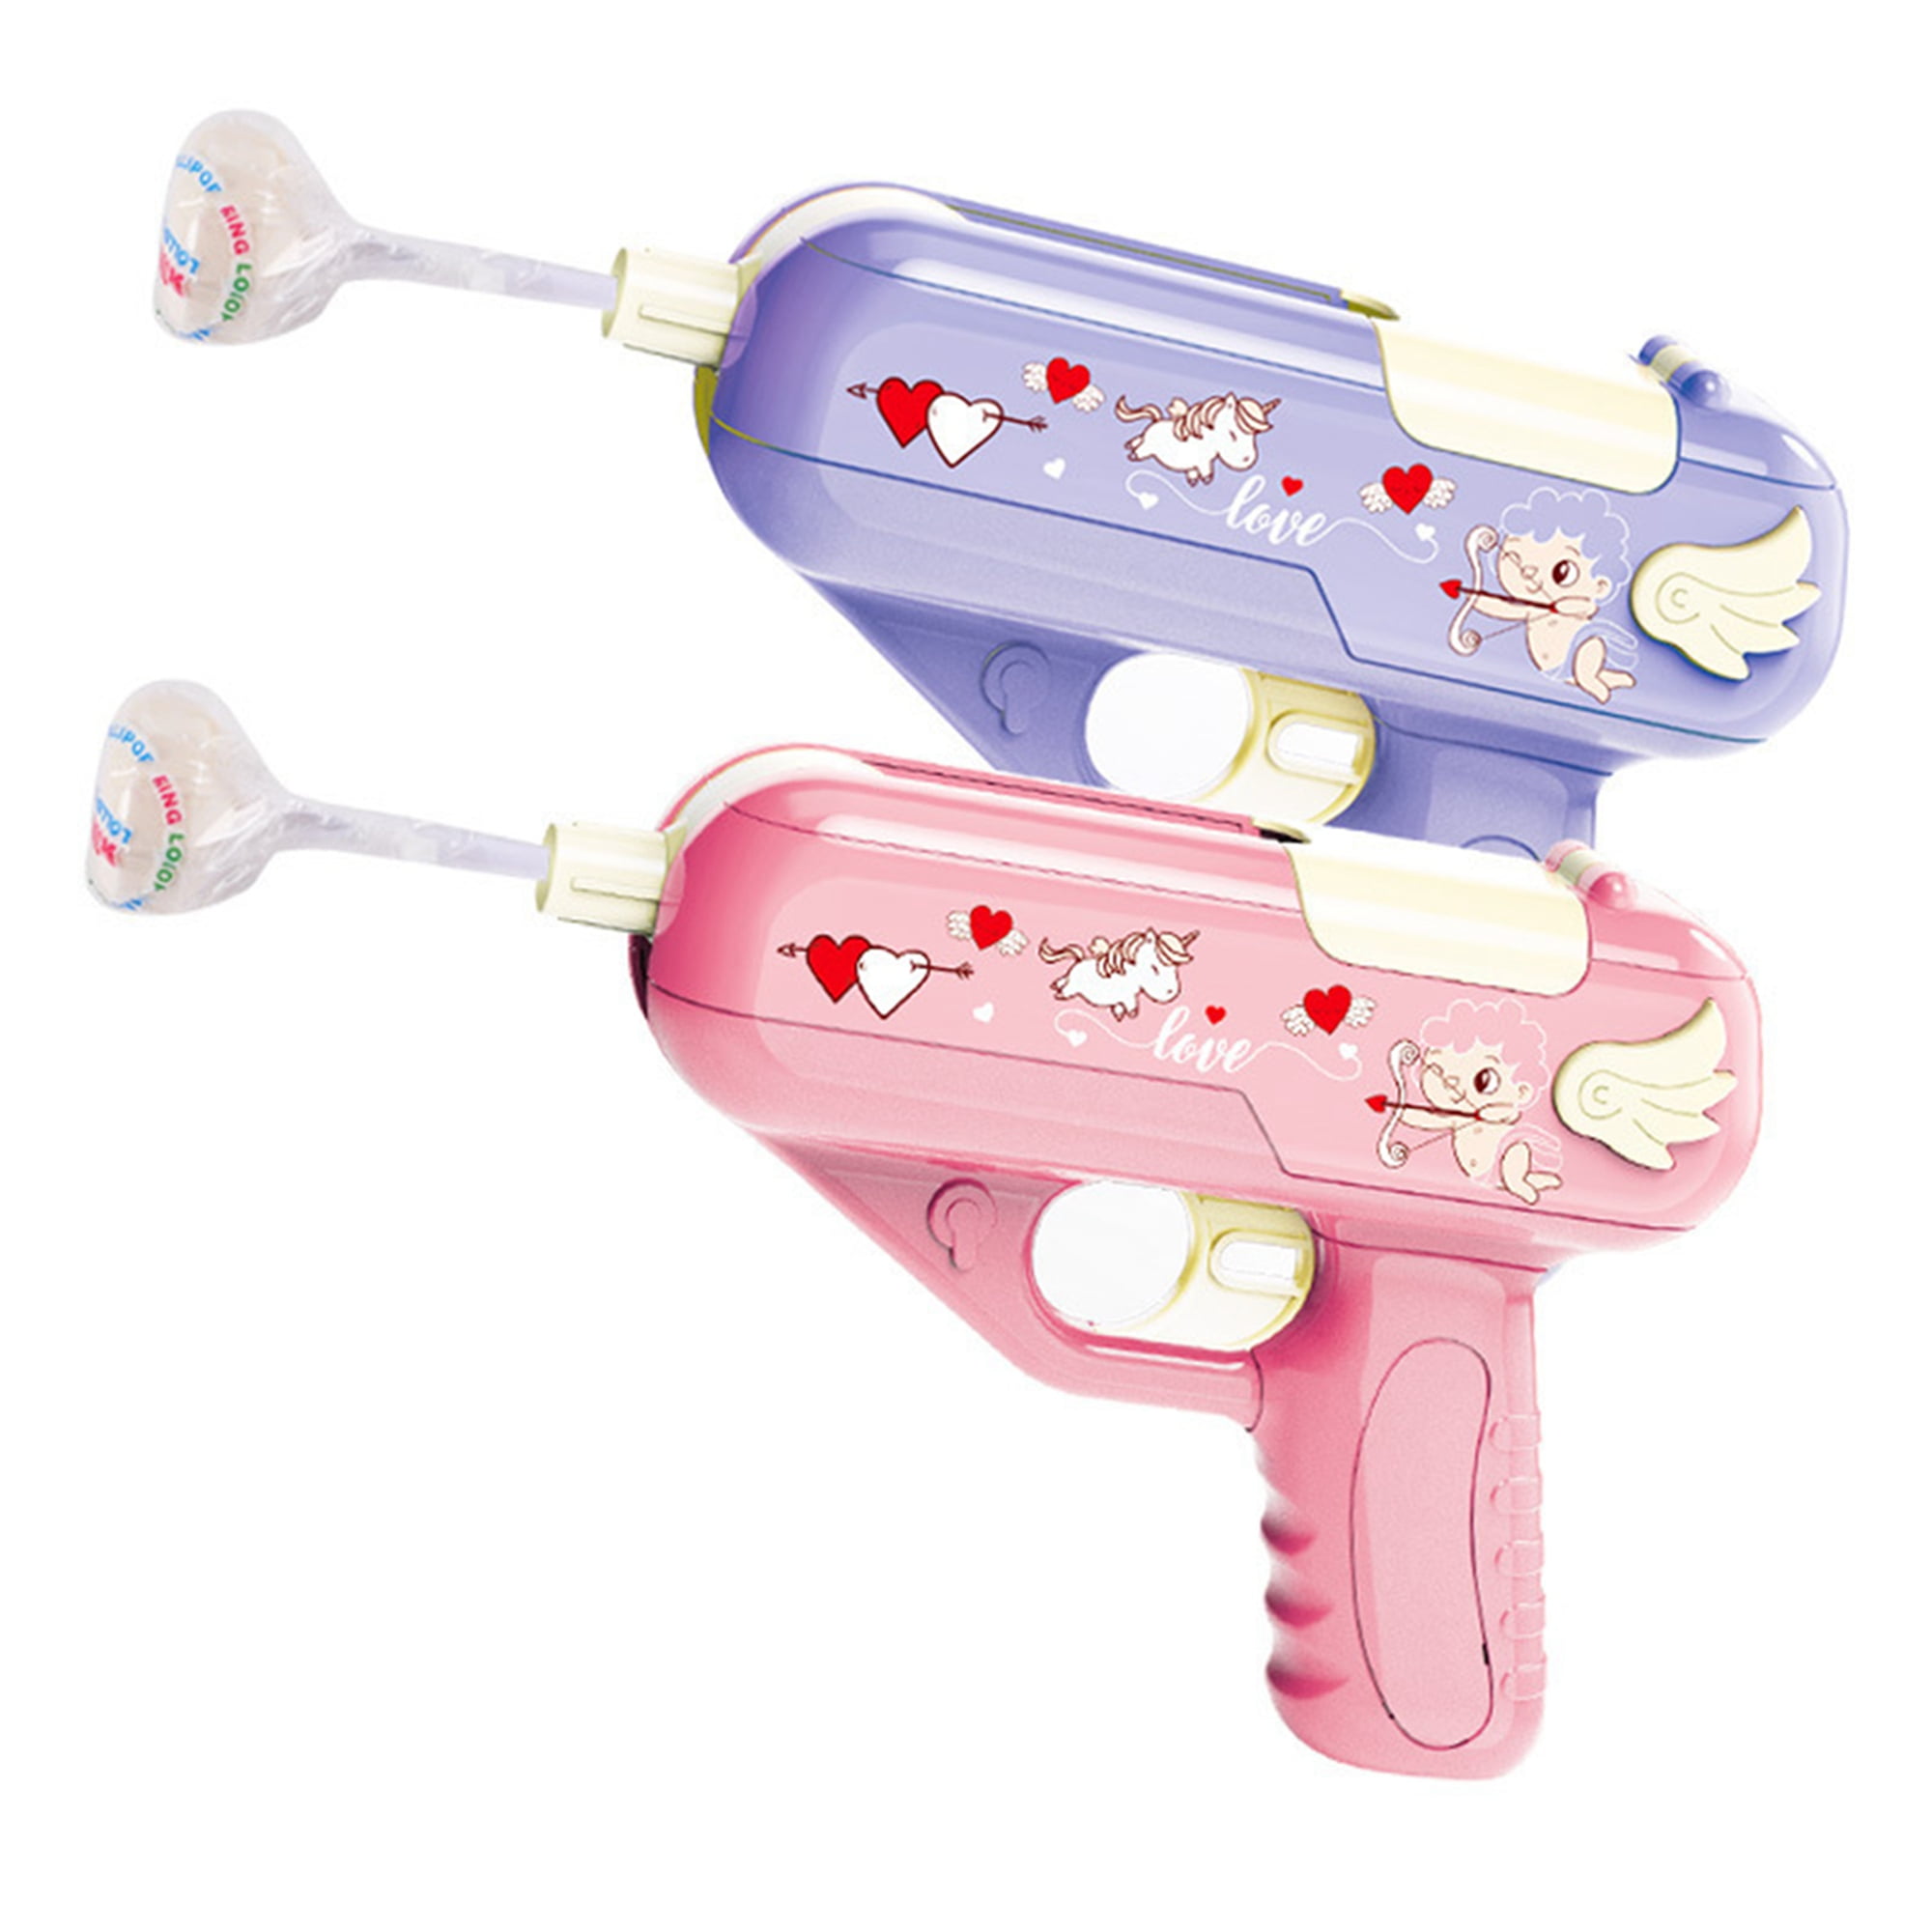 Details about   Lollipop Gun Creative Gift Children Toy Storage Toy Mother‘S Day Candy Gun Sugar 